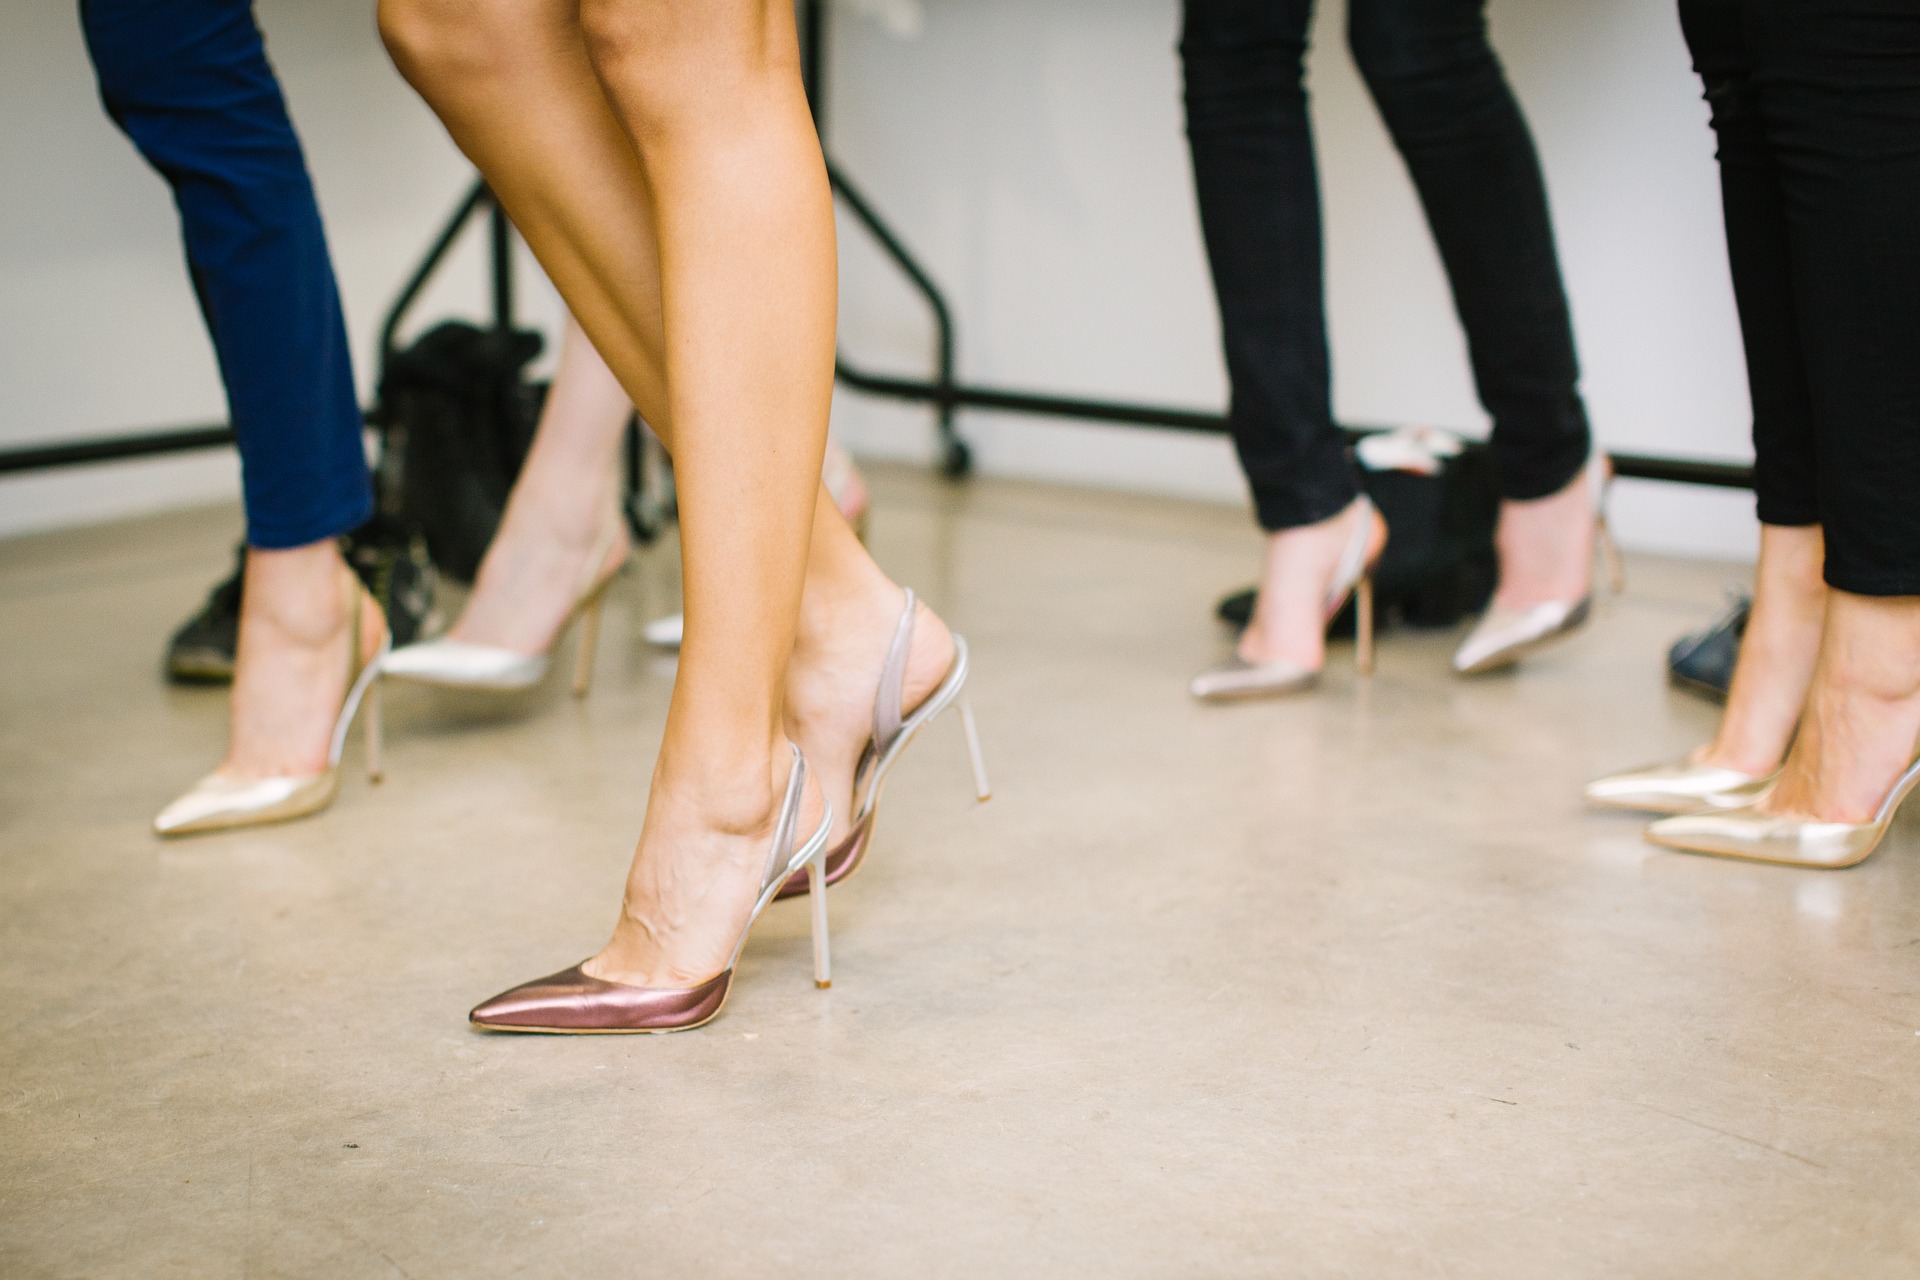 Al momento stai visualizzando L’oggetto del desiderio femminile | storia delle scarpe con i tacchi